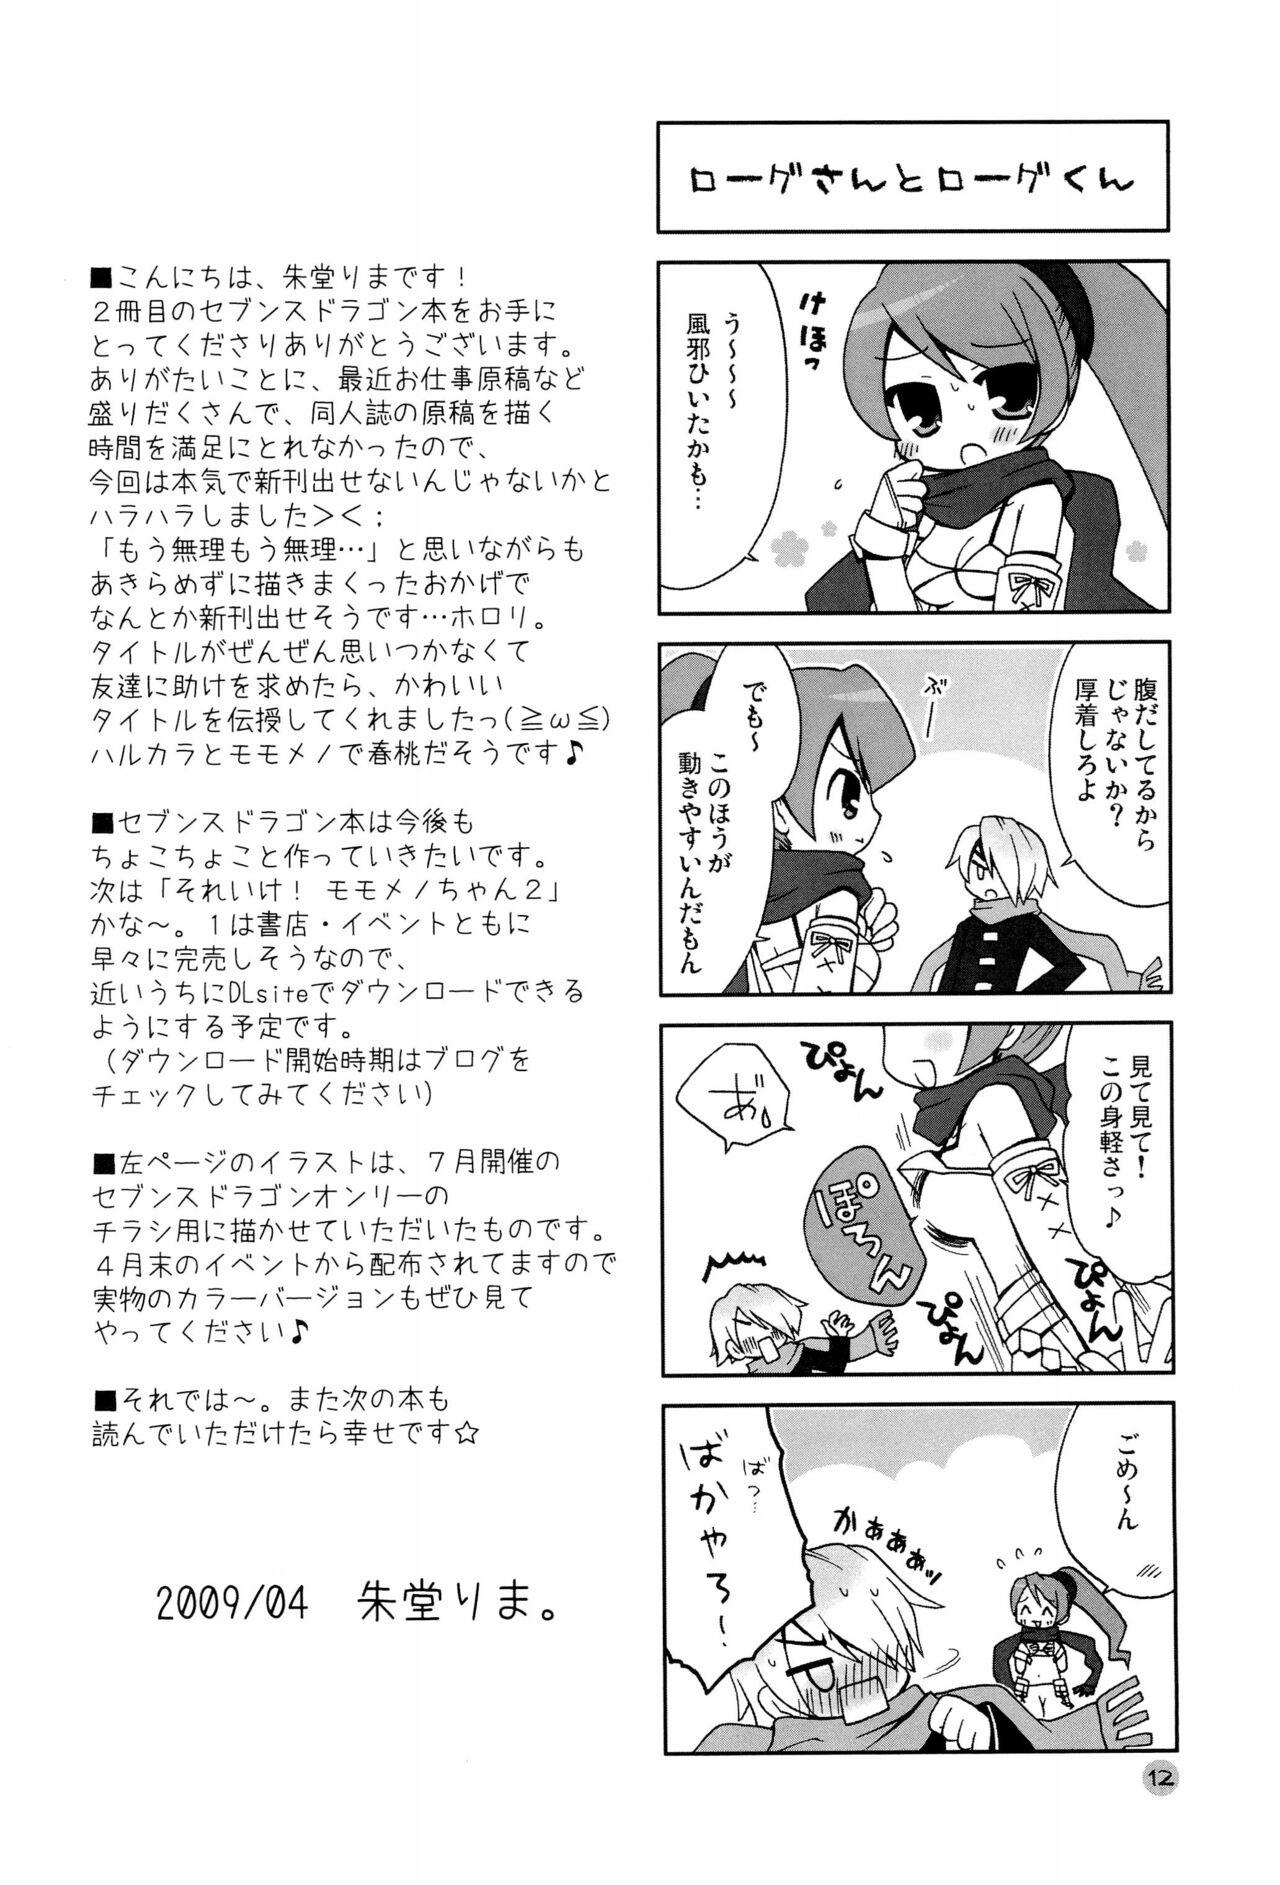 Blacks Harumomo no Tsubomi - 7th dragon Sex - Page 12